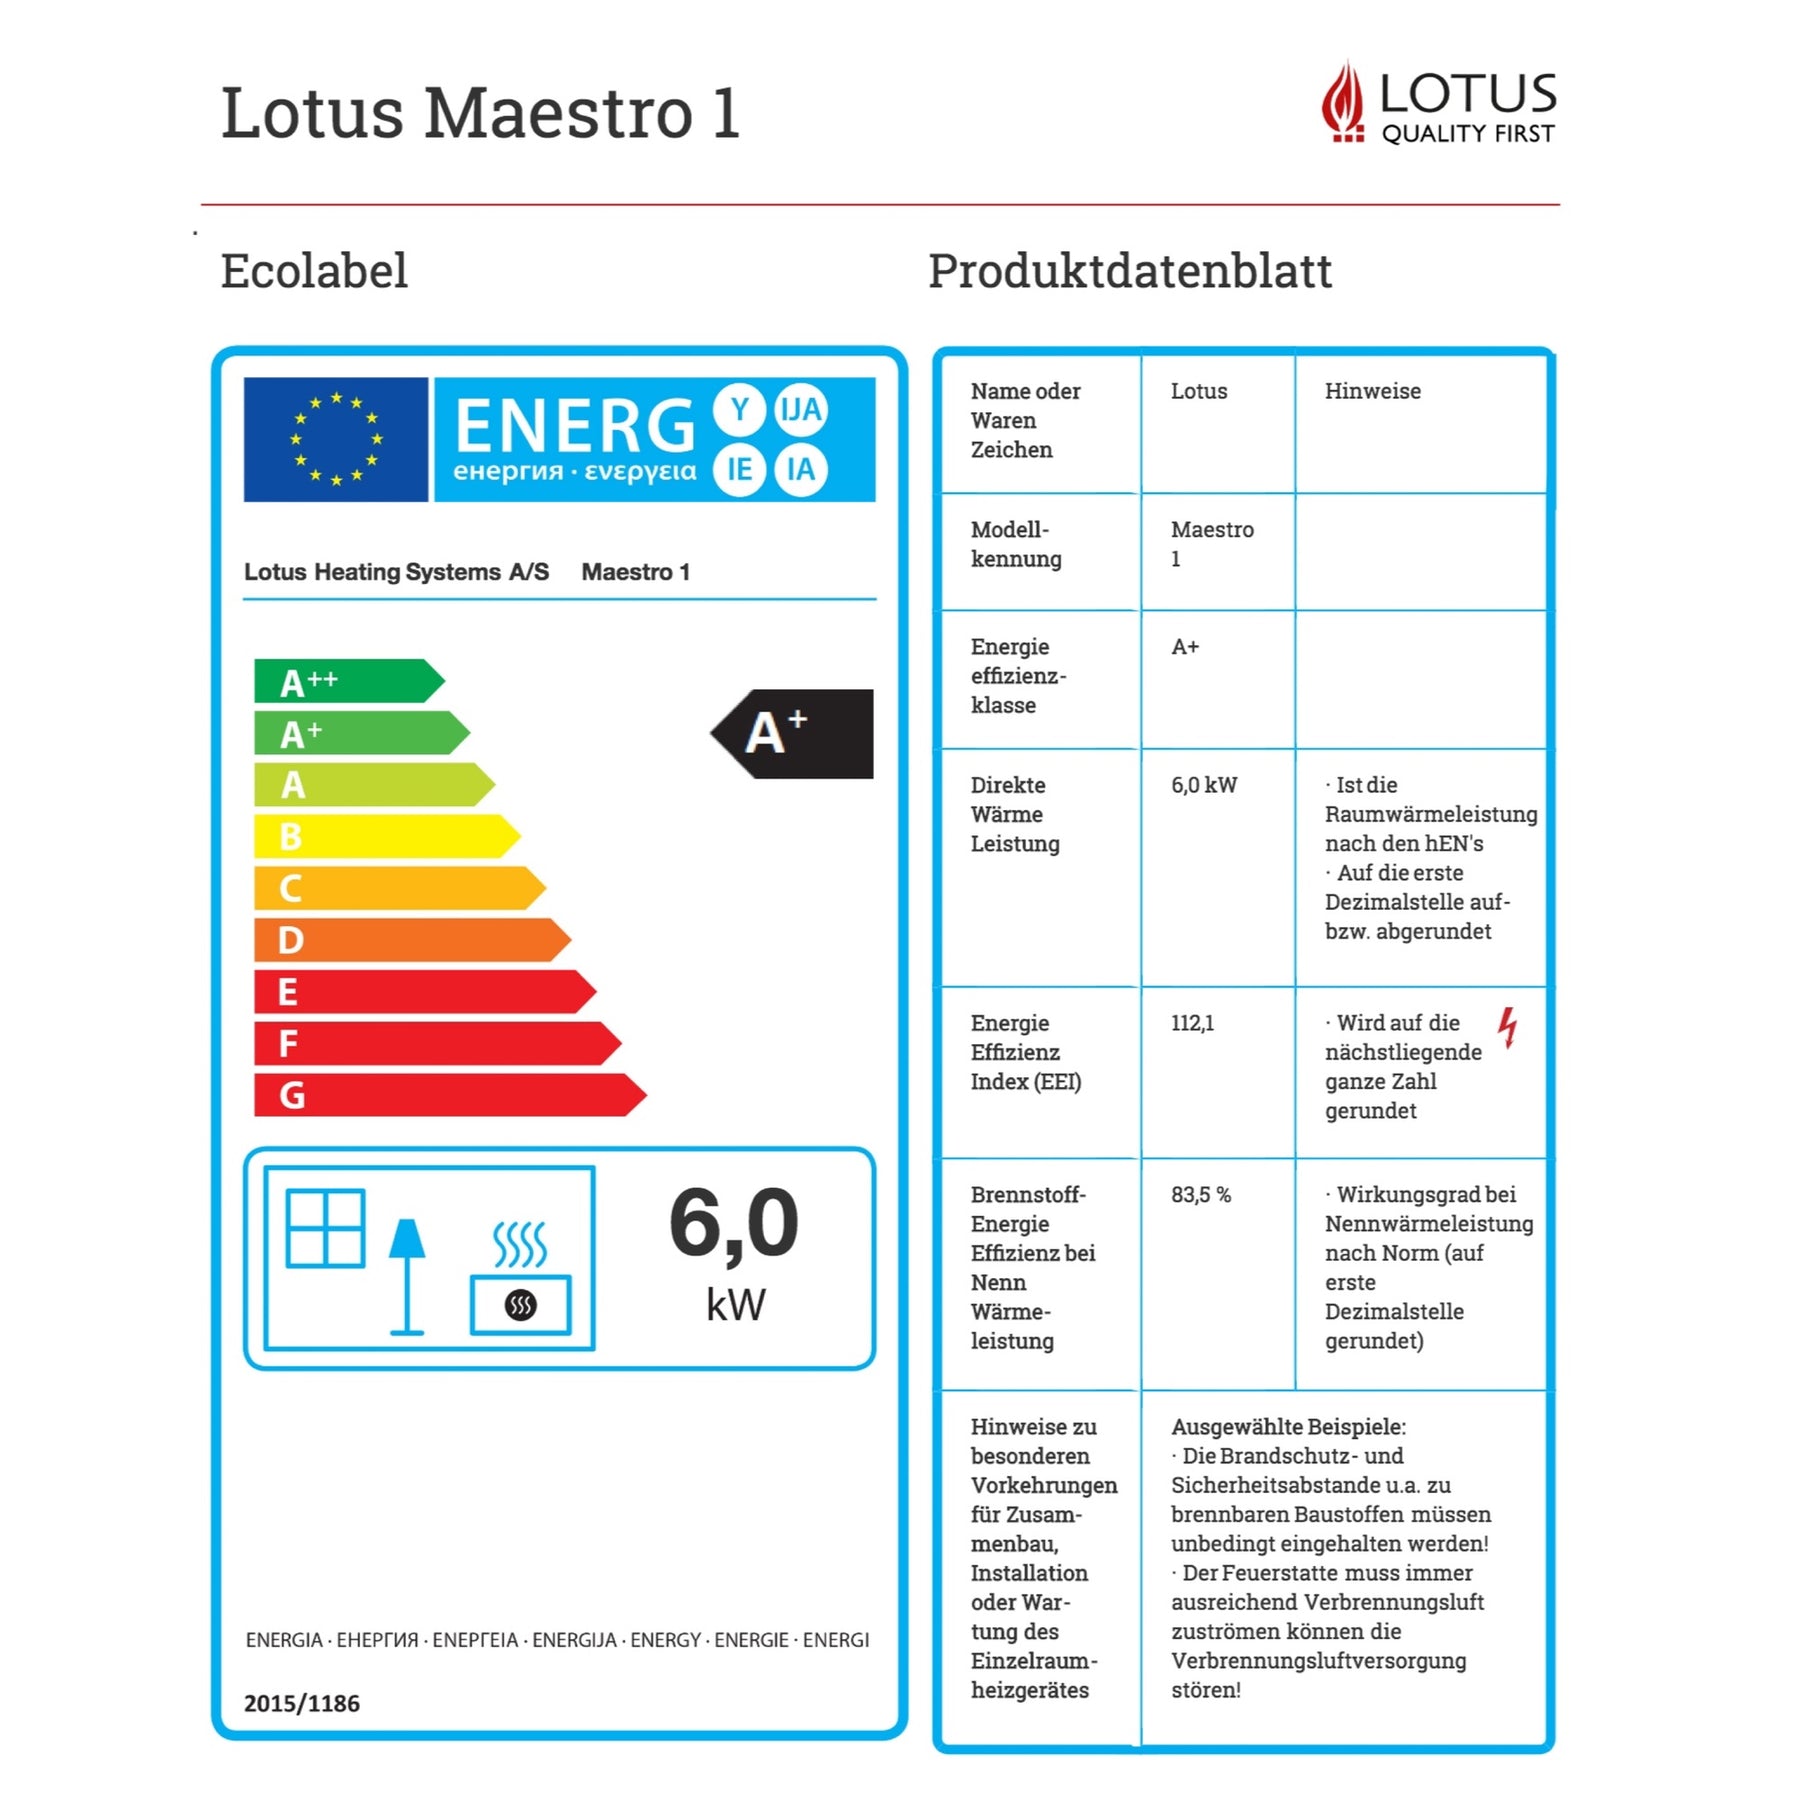 Lotus Speicherofen Maestro 1 Ecolabel